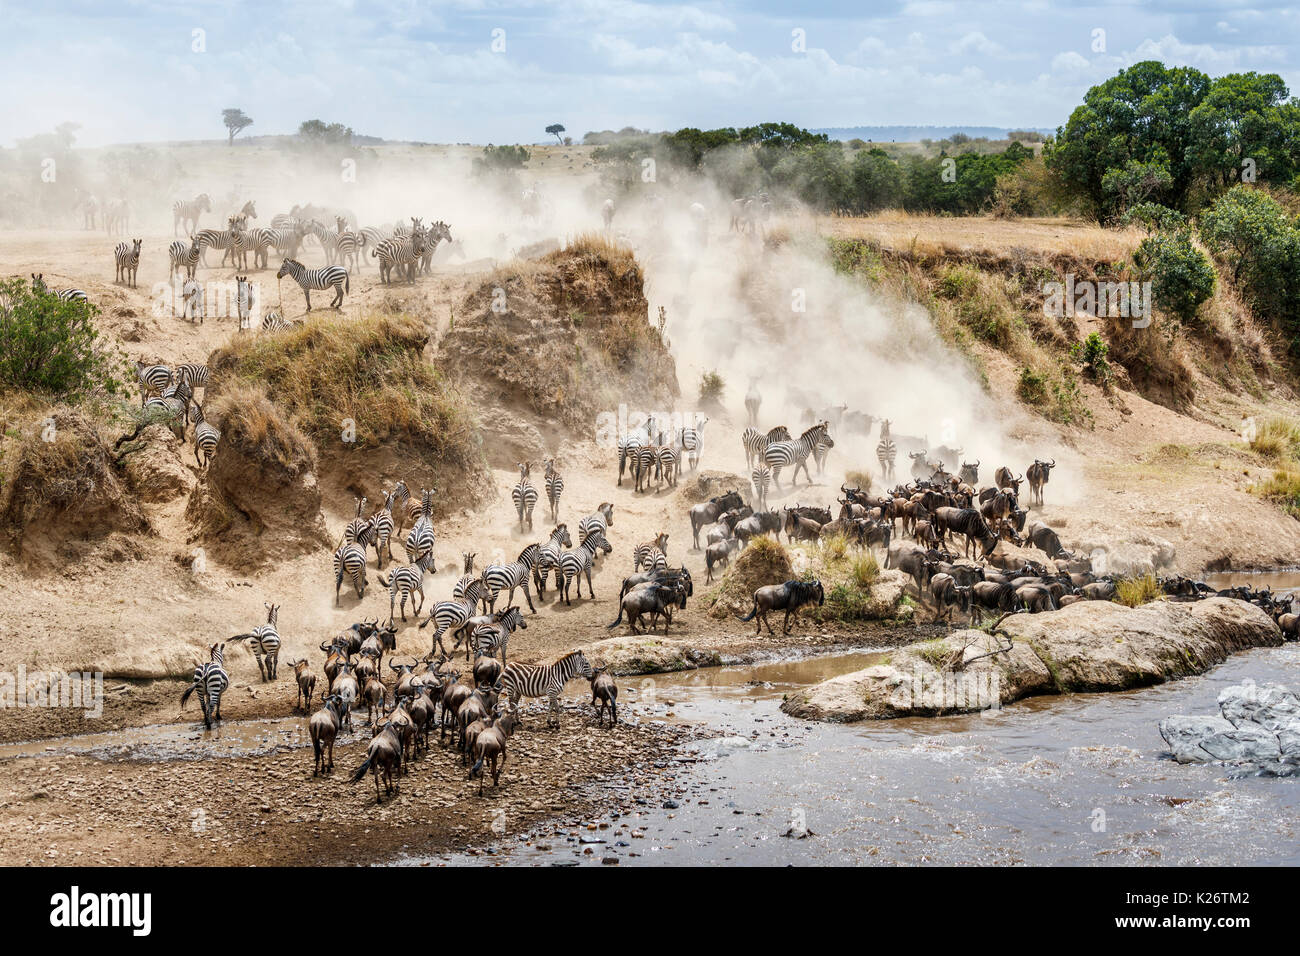 Les troupeaux de gnous bleu (Connochaetes taurinus) et zèbre des plaines (Equus burchellii) recueillir par la rivière Mara pour un passage à niveau, Masai Mara, Kenya Banque D'Images